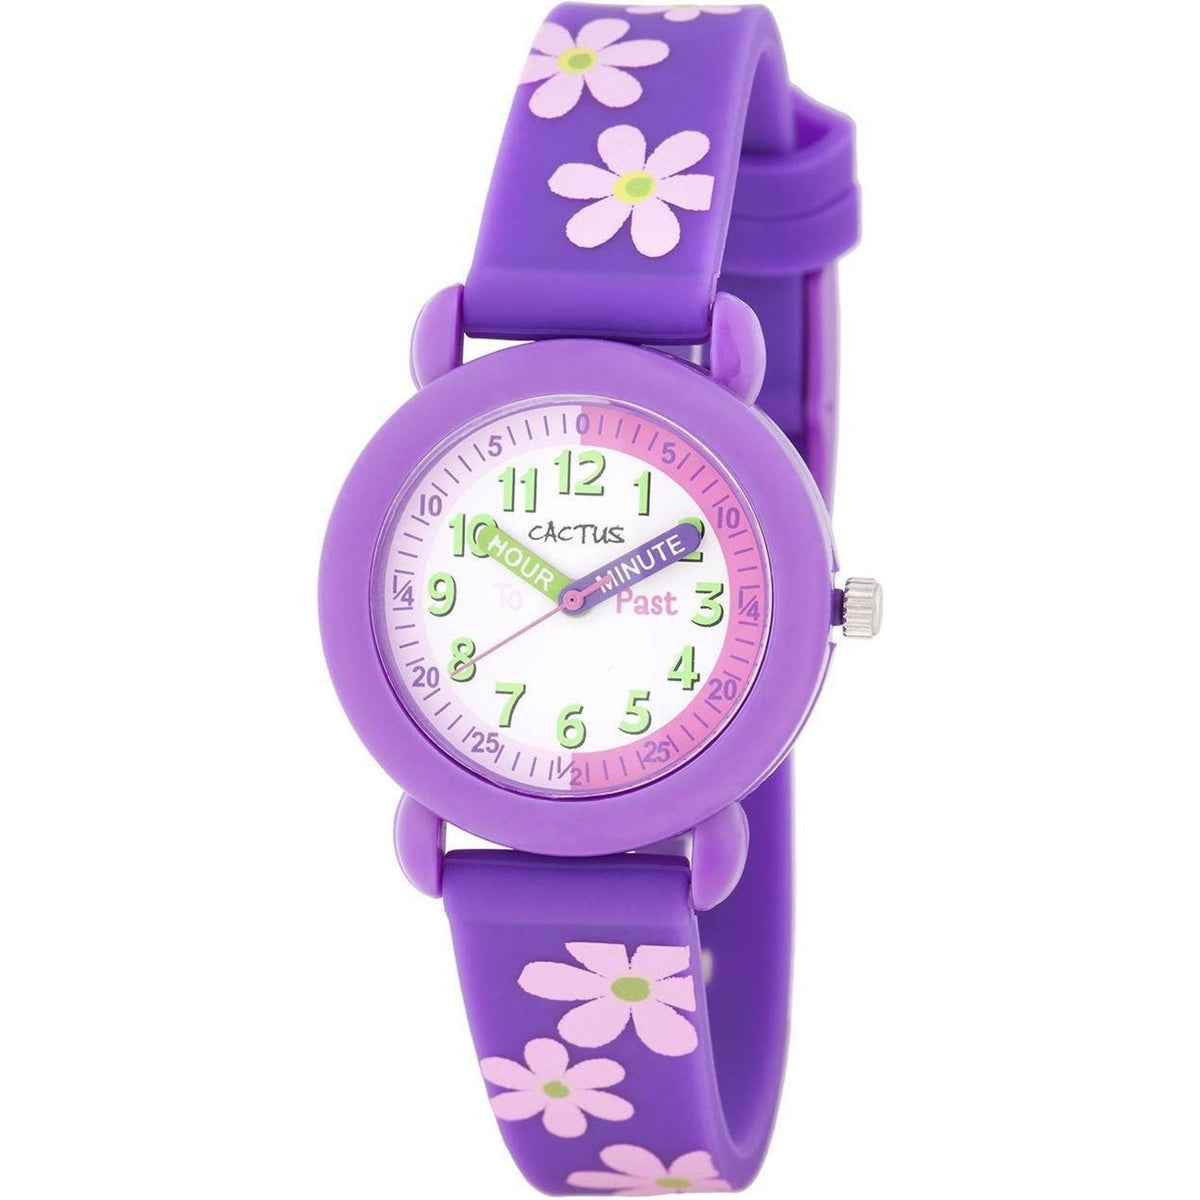 Cactus - Timekeeper - Kids Watch - Purple / Flowers - Toybox Tales